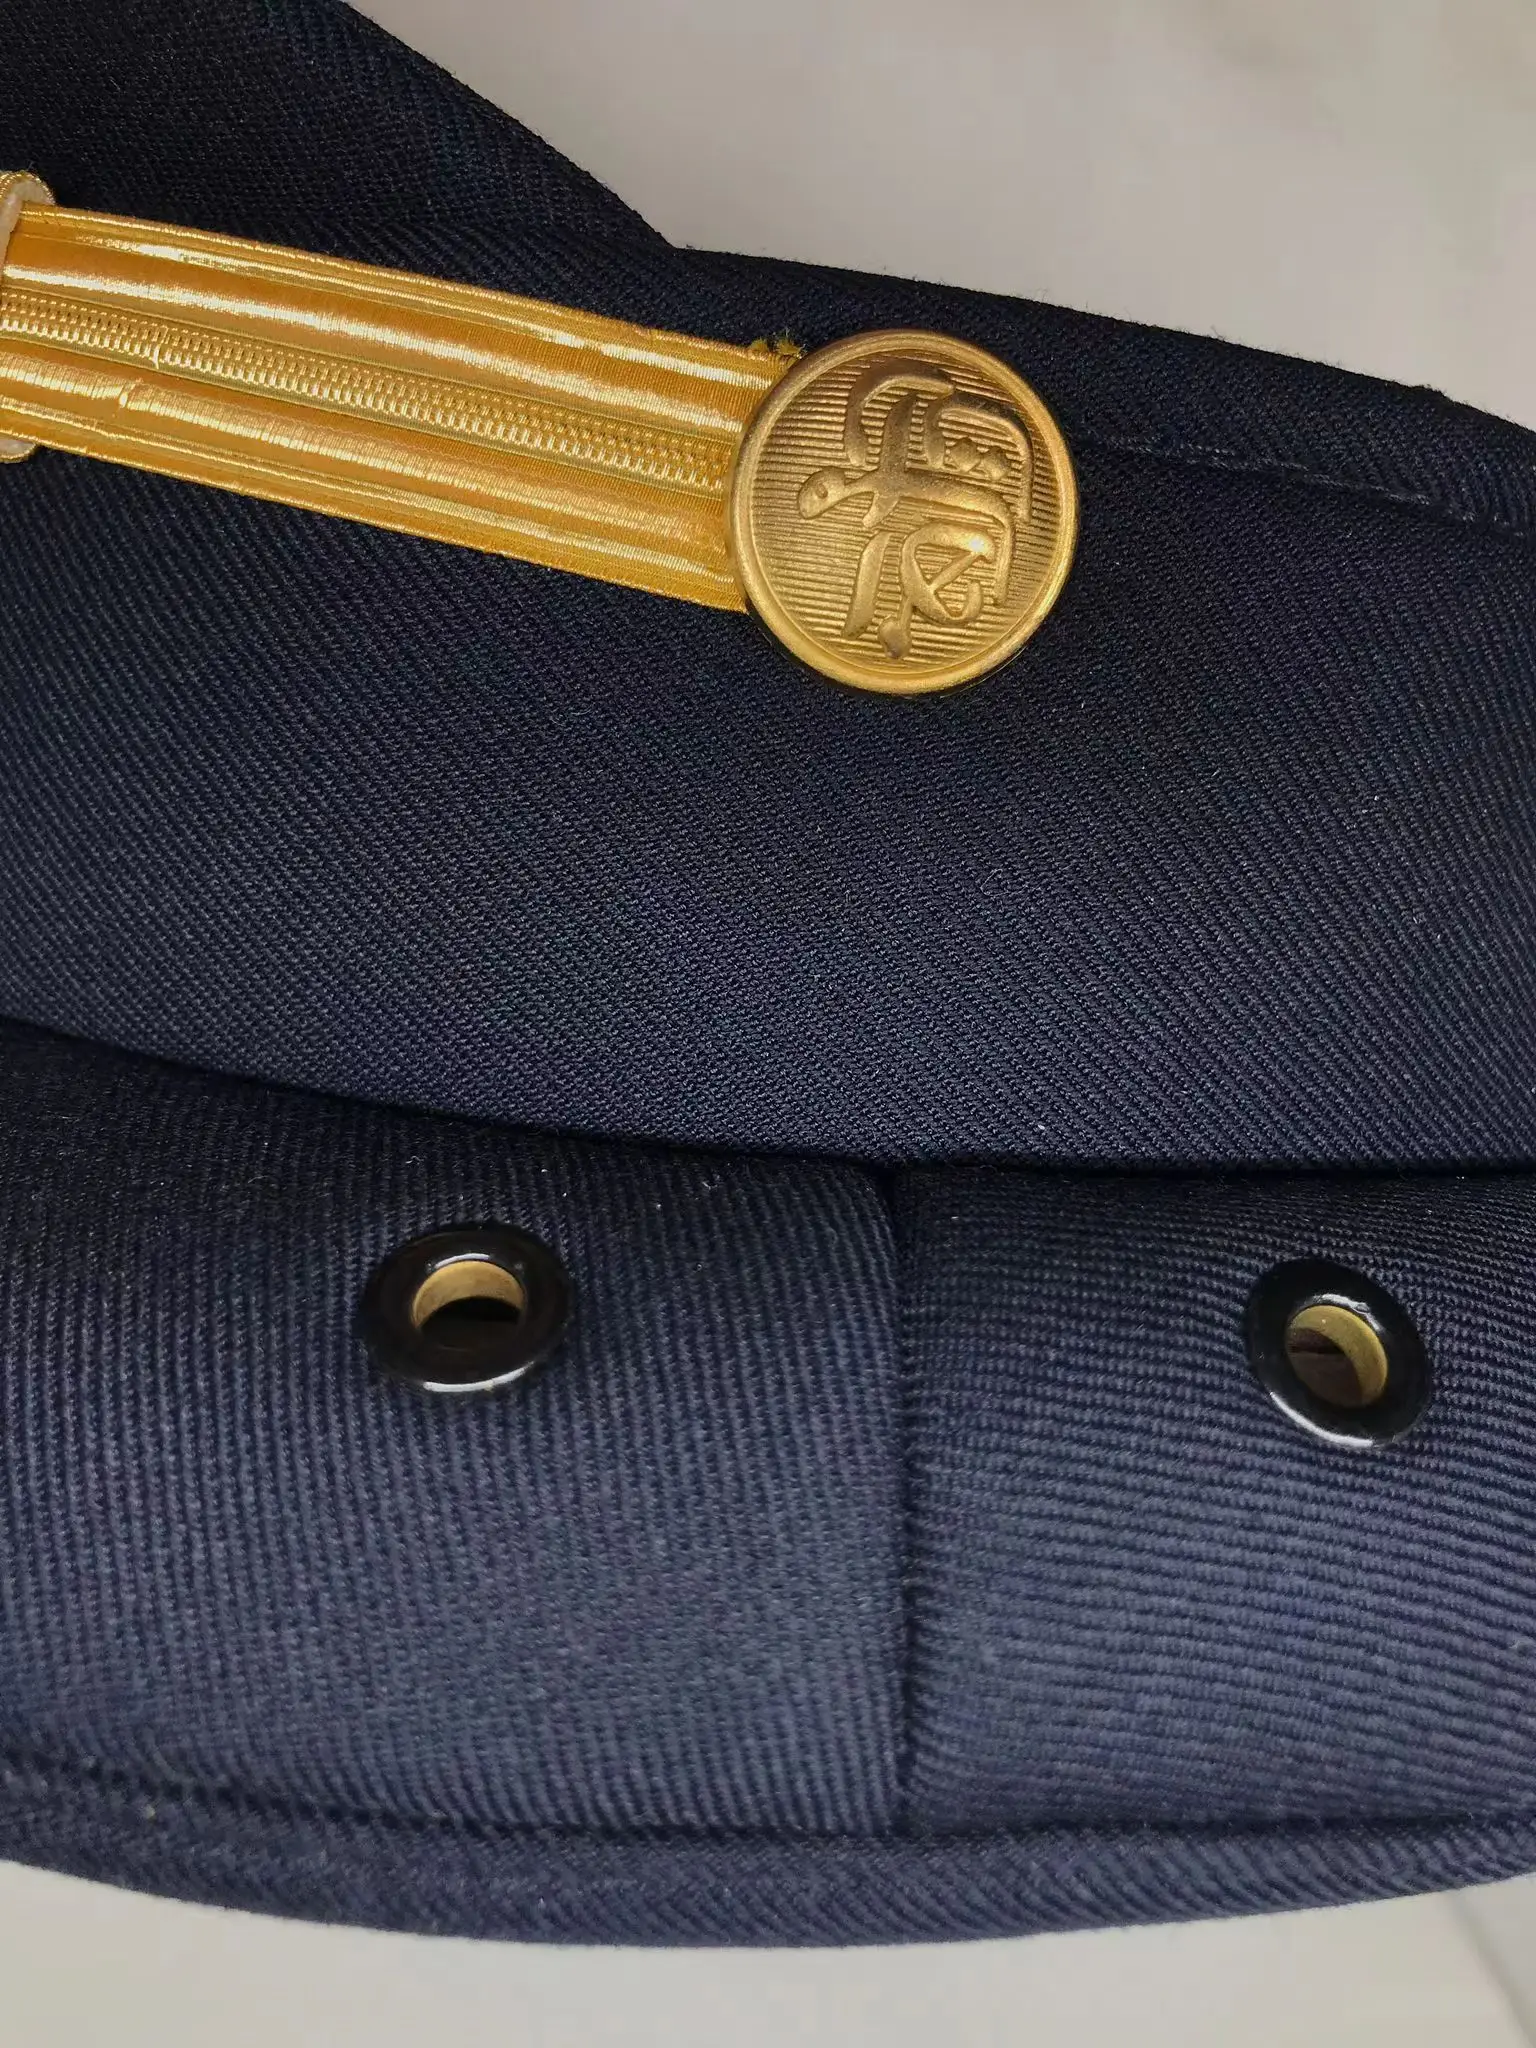 Customized Business Uniform Wear Peaked Cap Men's Captain Hat Pilot ...